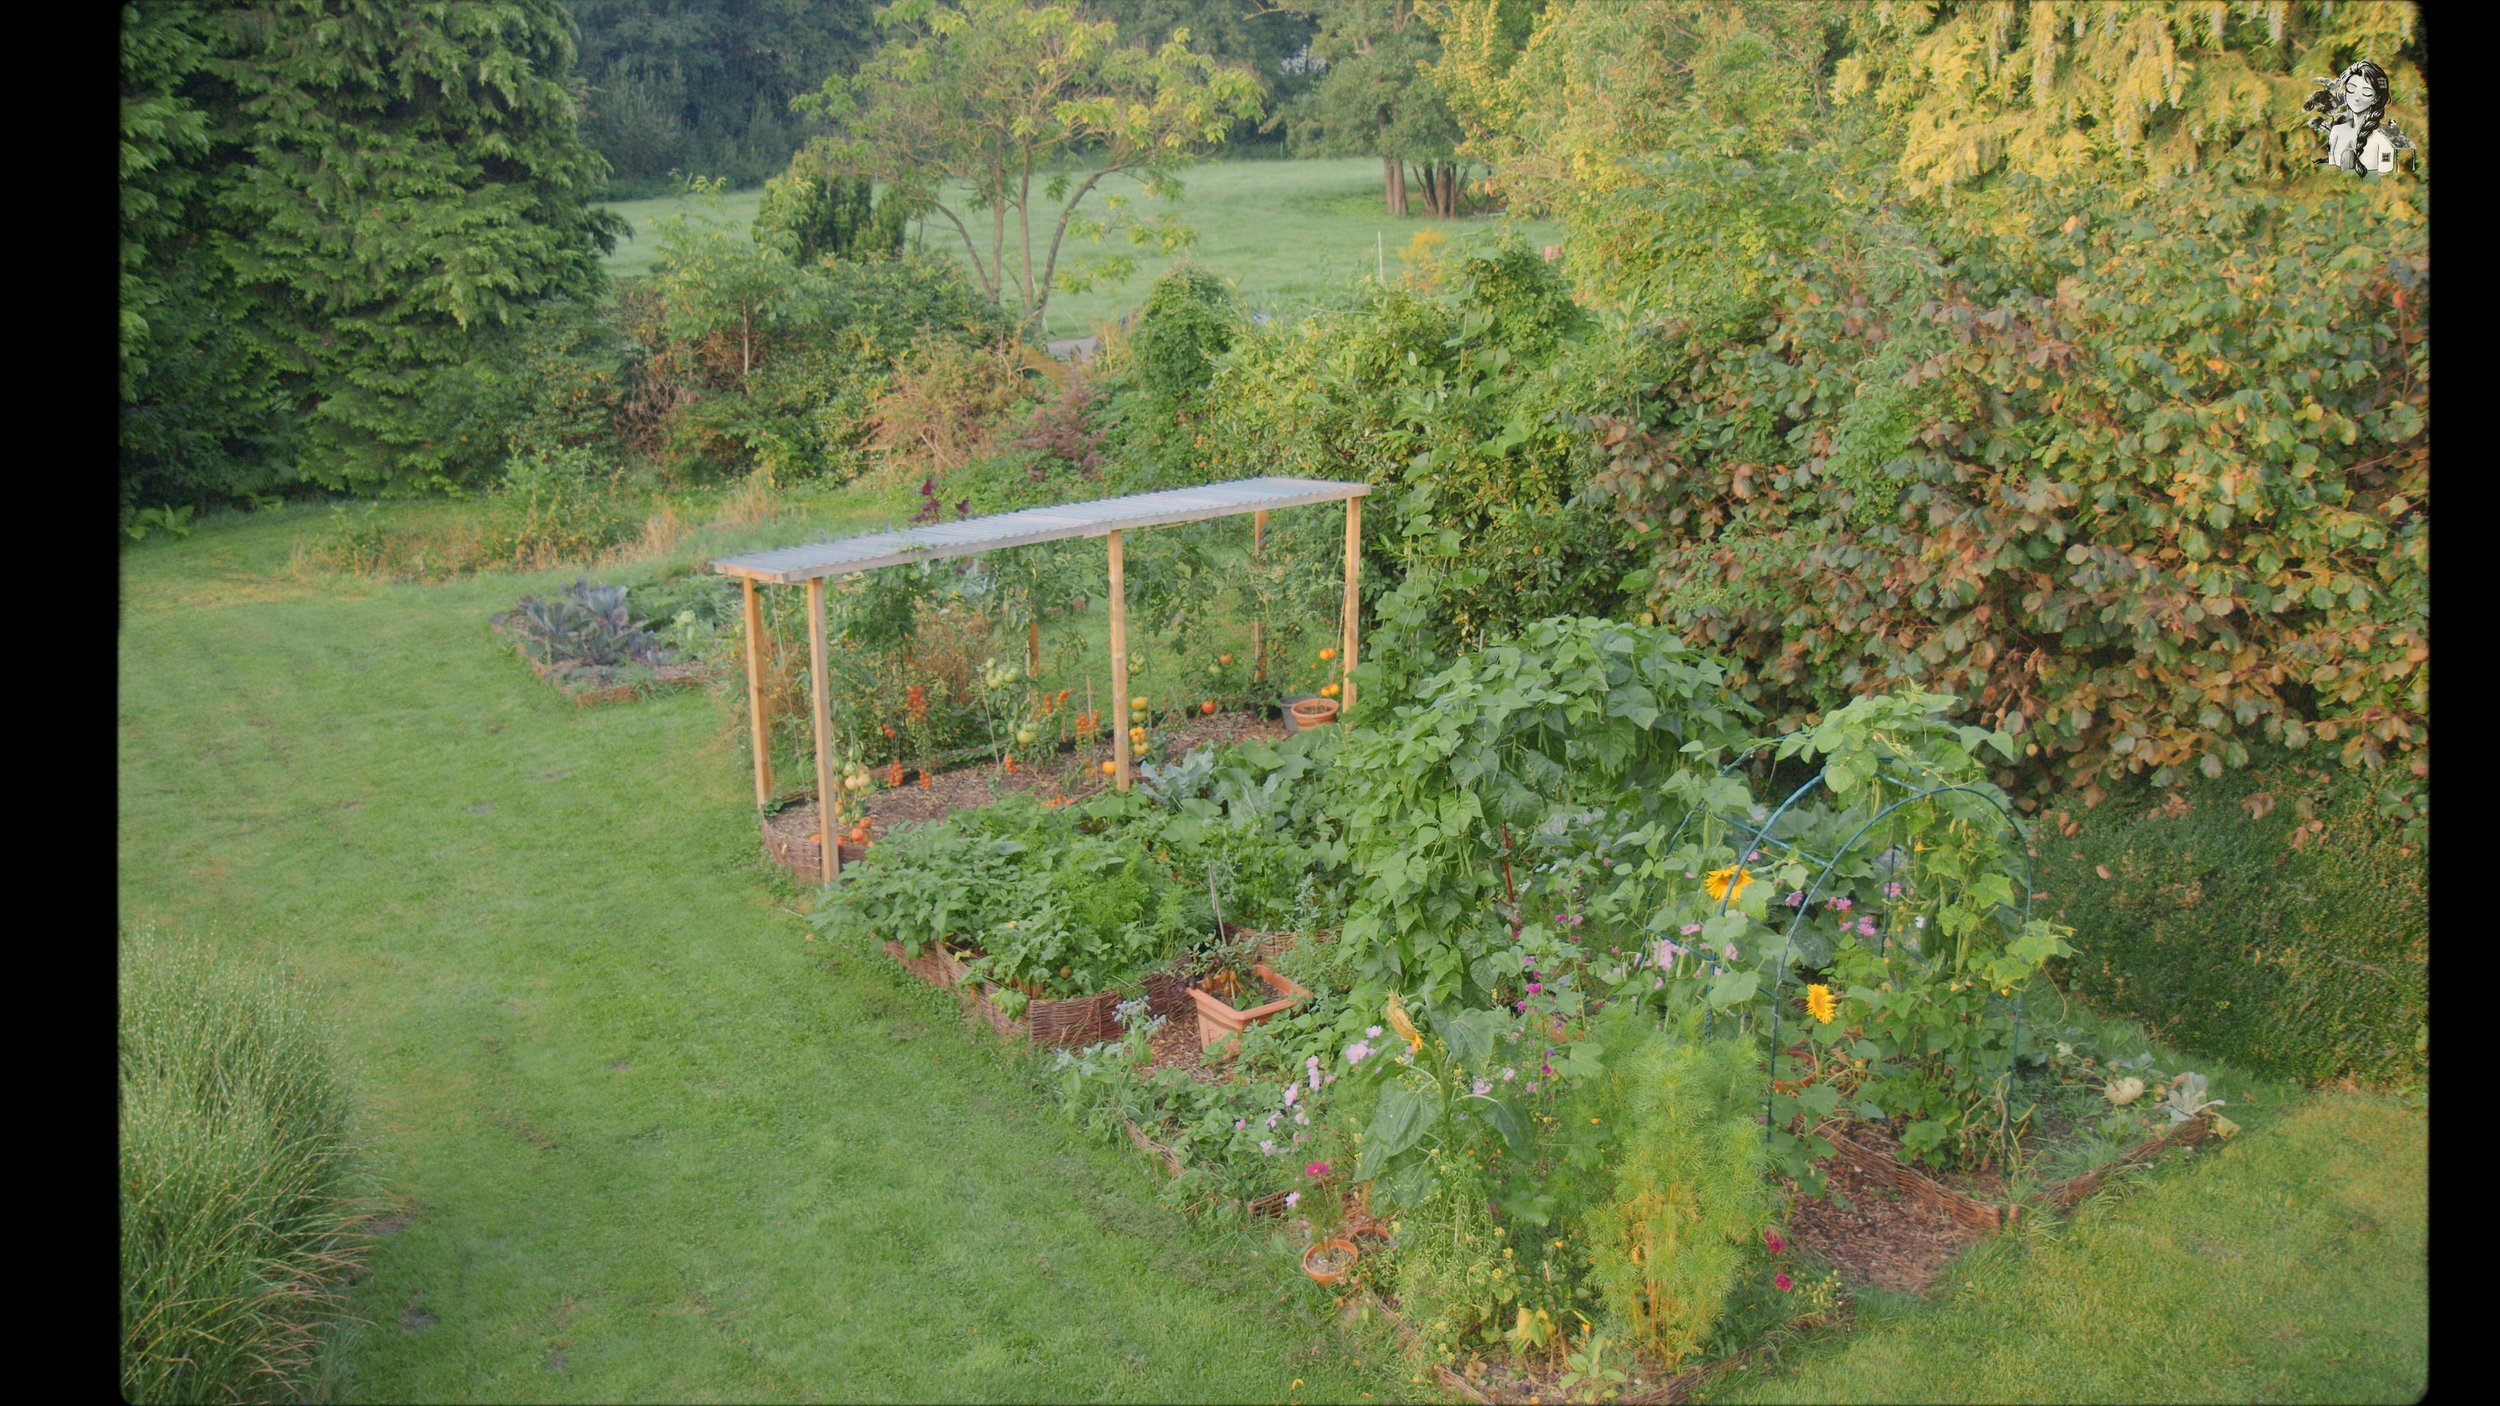 218 Days of Growing My Vegetables Garden_1.794.1.jpg